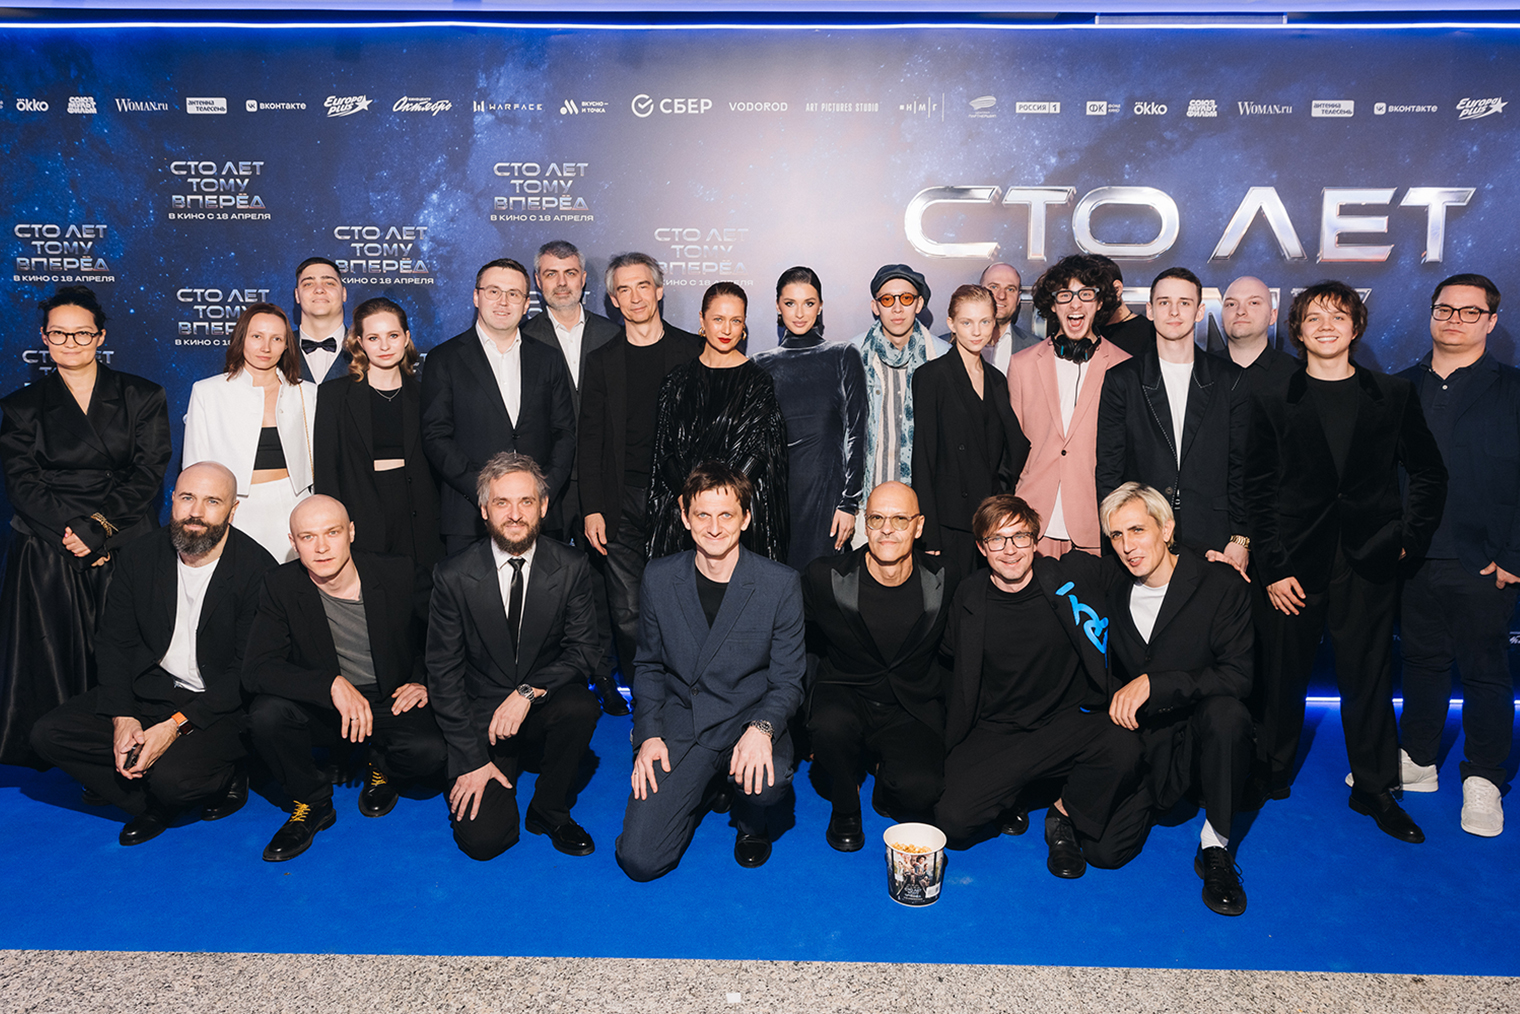 Съемочная команда и актеры на премьере фильма в Москве